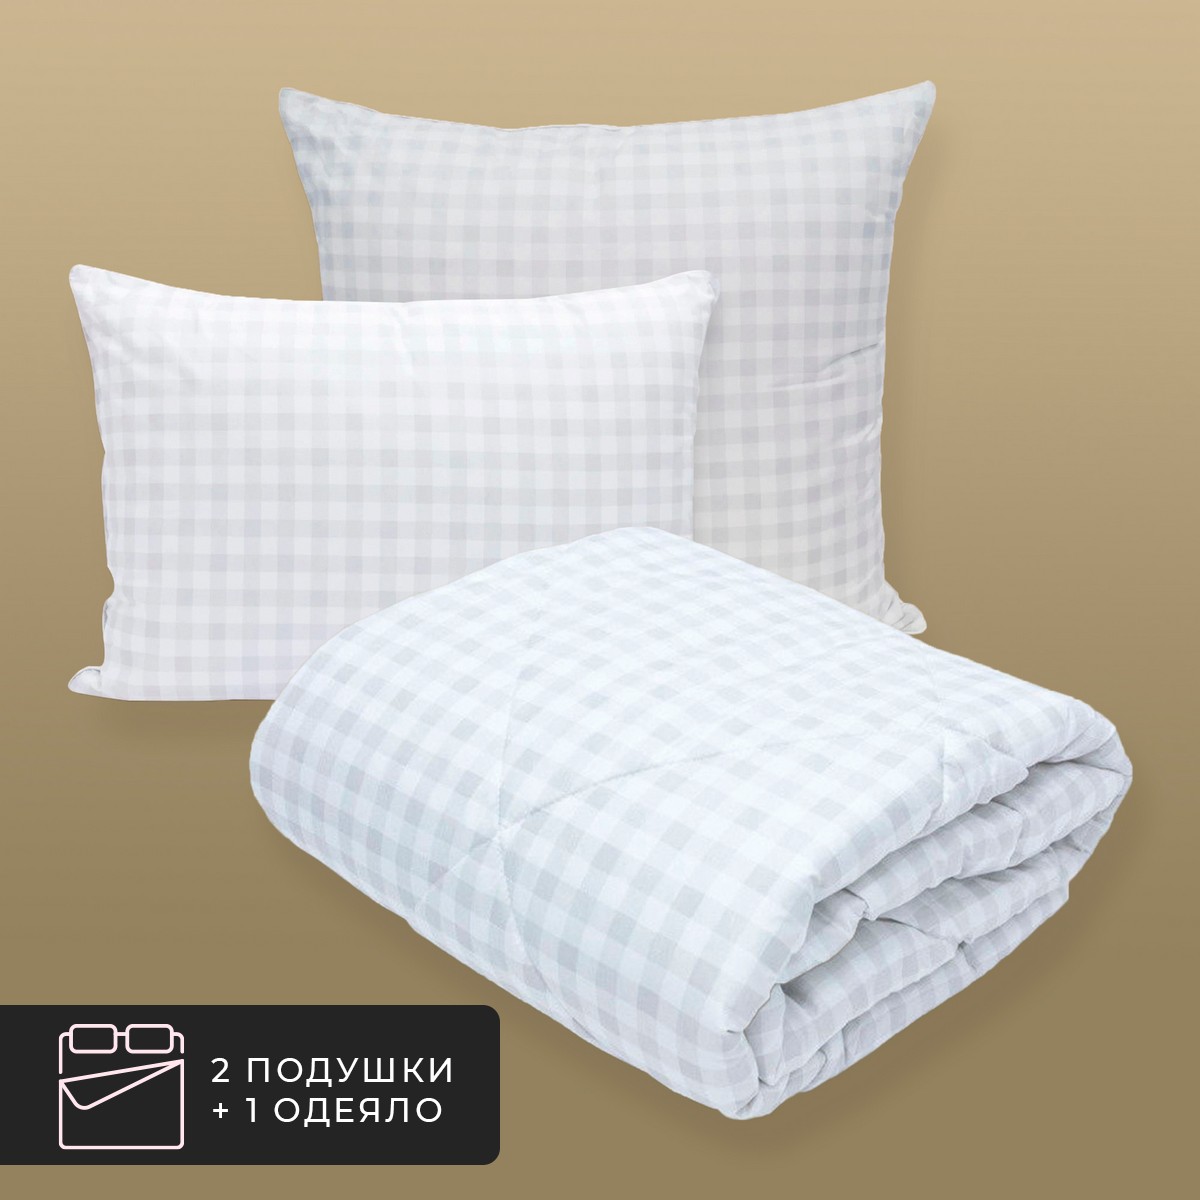 Комплект постельного белья CLASSIC by T Скандинавия 2-спальный, микрофибра, белый